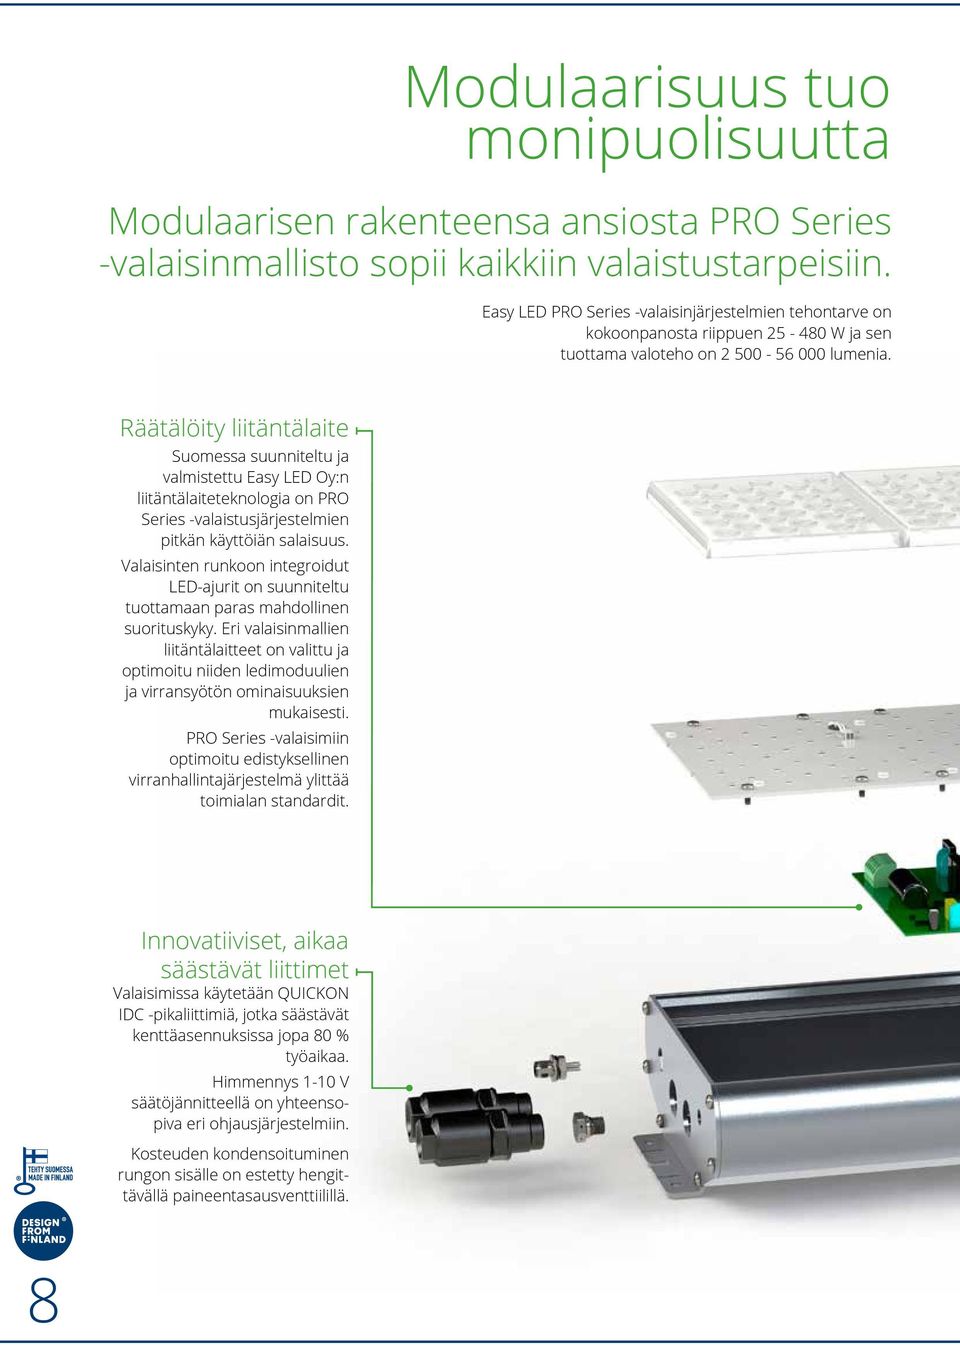 Räätälöity liitäntälaite Suomessa suunniteltu ja valmistettu Easy LED Oy:n liitäntälaiteteknologia on PRO Series -valaistusjärjestelmien pitkän käyttöiän salaisuus.